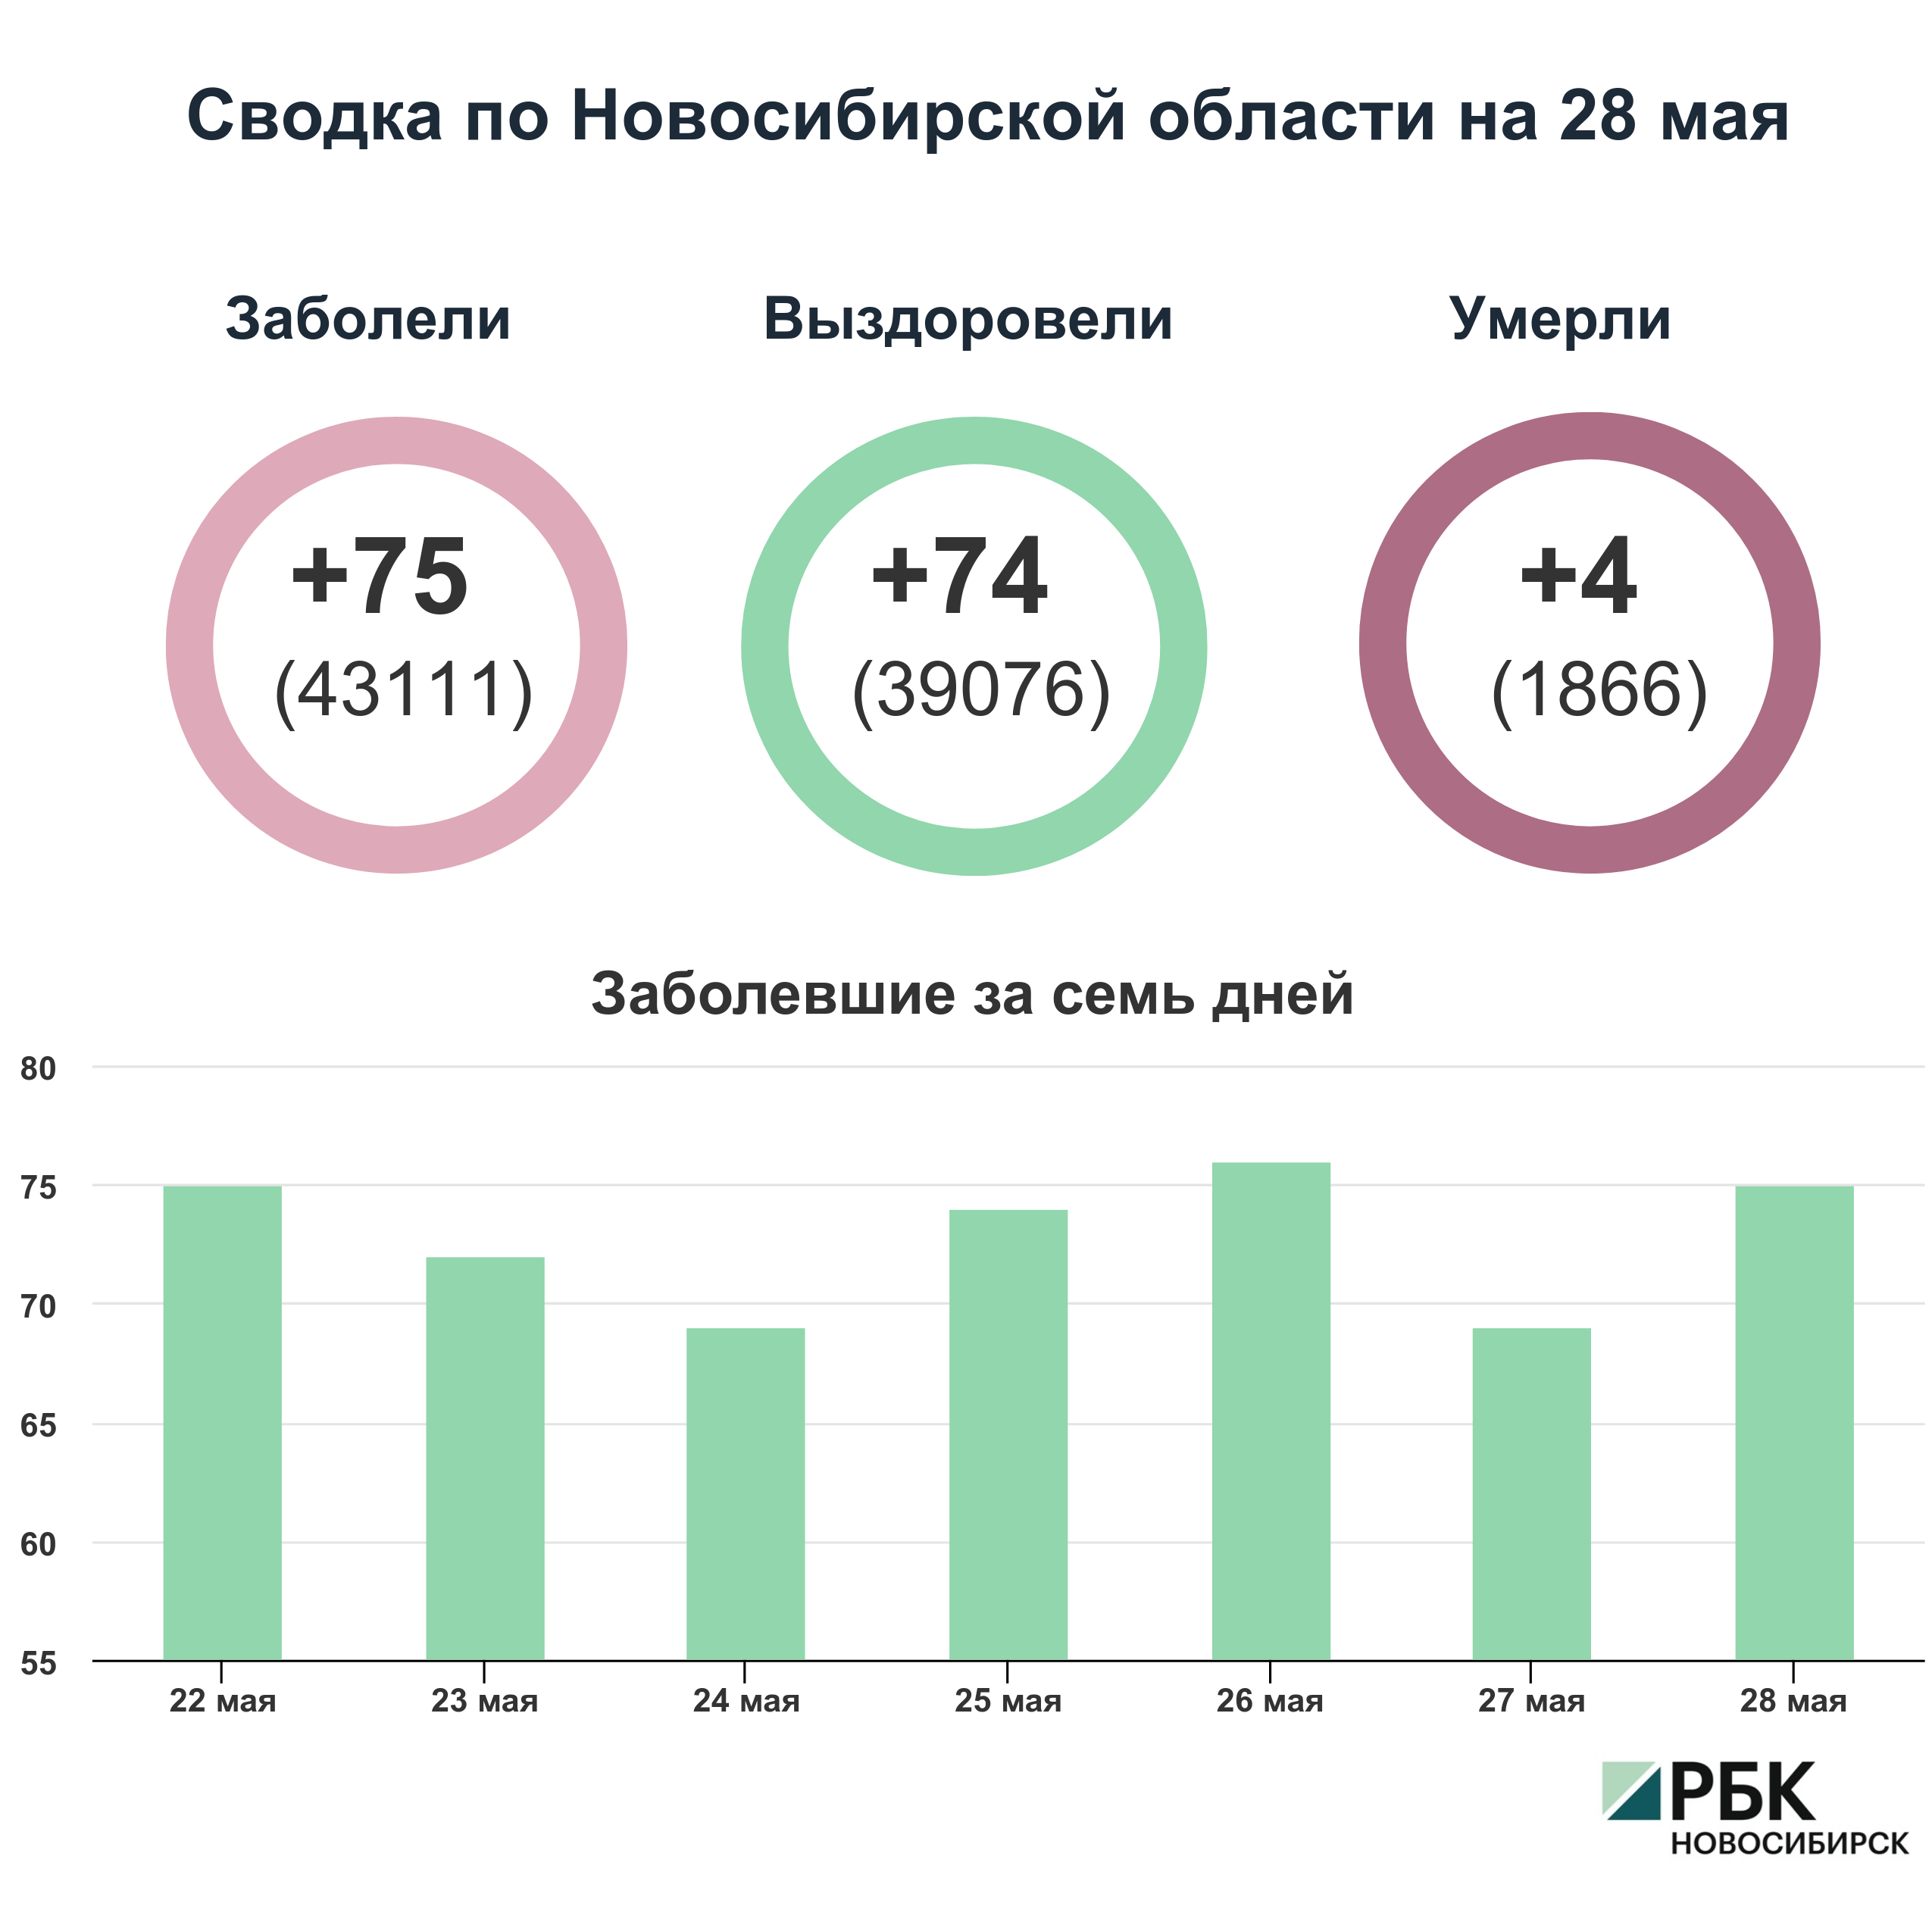 Коронавирус в Новосибирске: сводка на 28 мая